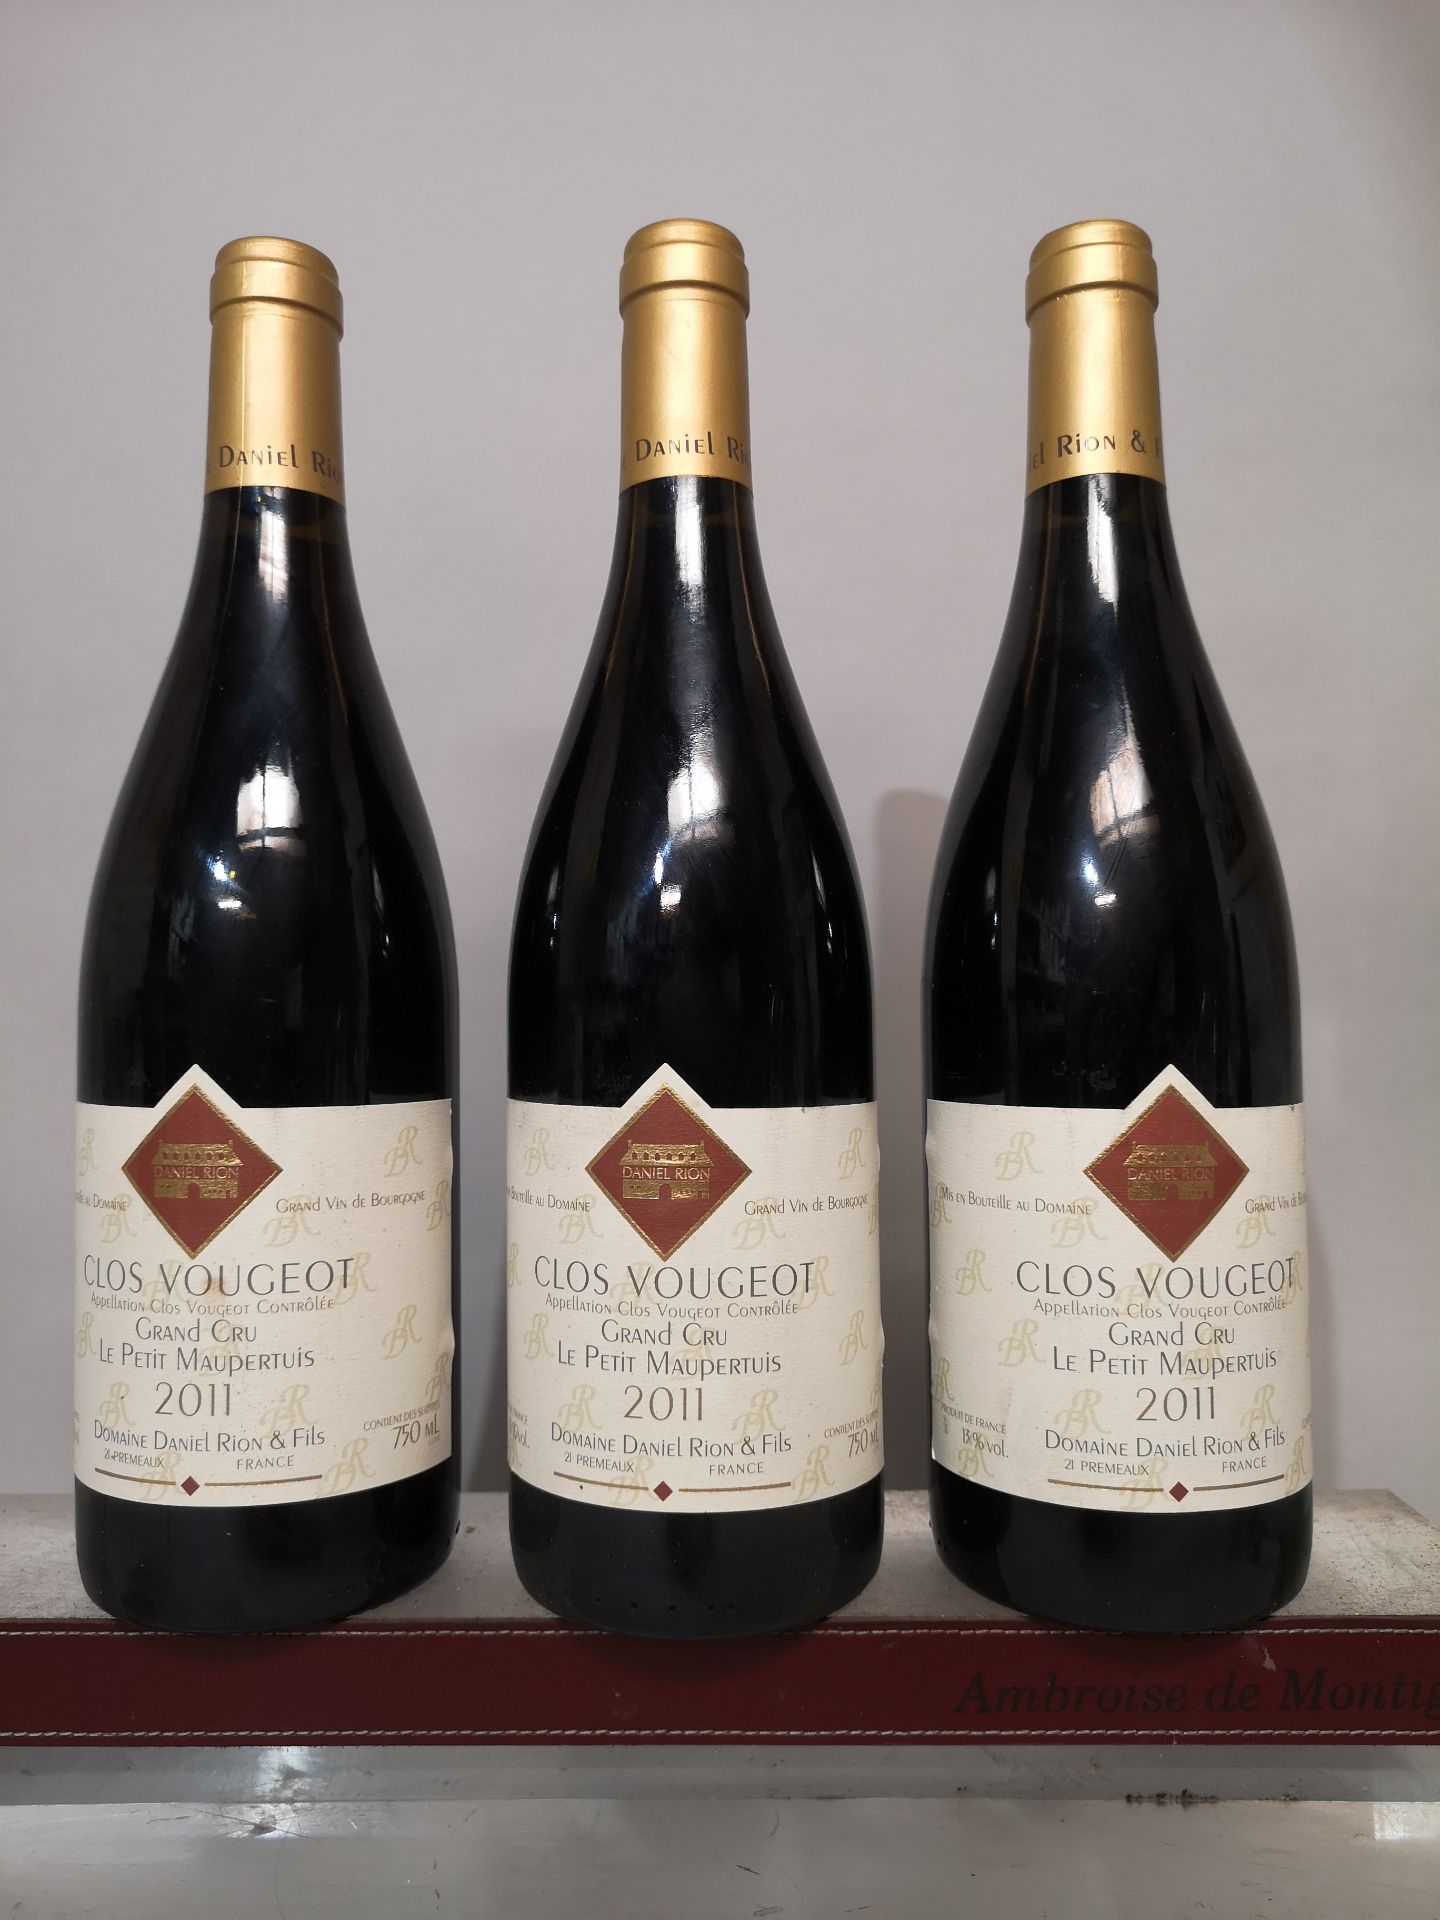 3 Clos Vougeot Grand Cru - Le Petit Maupertuis - Daniel Rion & Fils 2011 bottles.